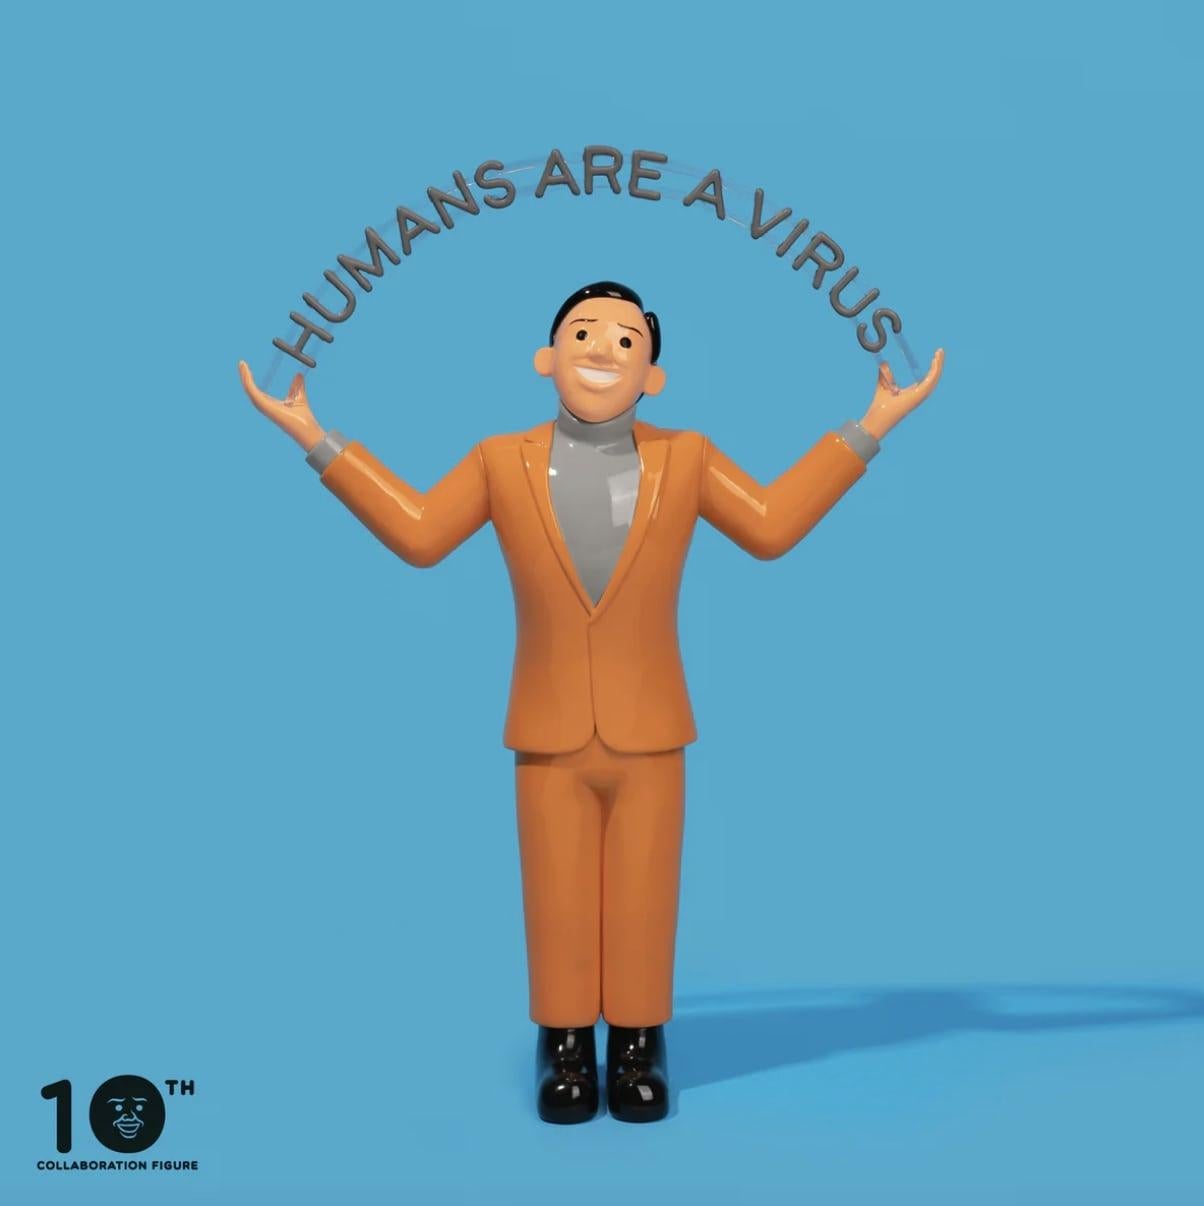 Figurative Sculpture Joan Cornellà  - Les humains sont un virode